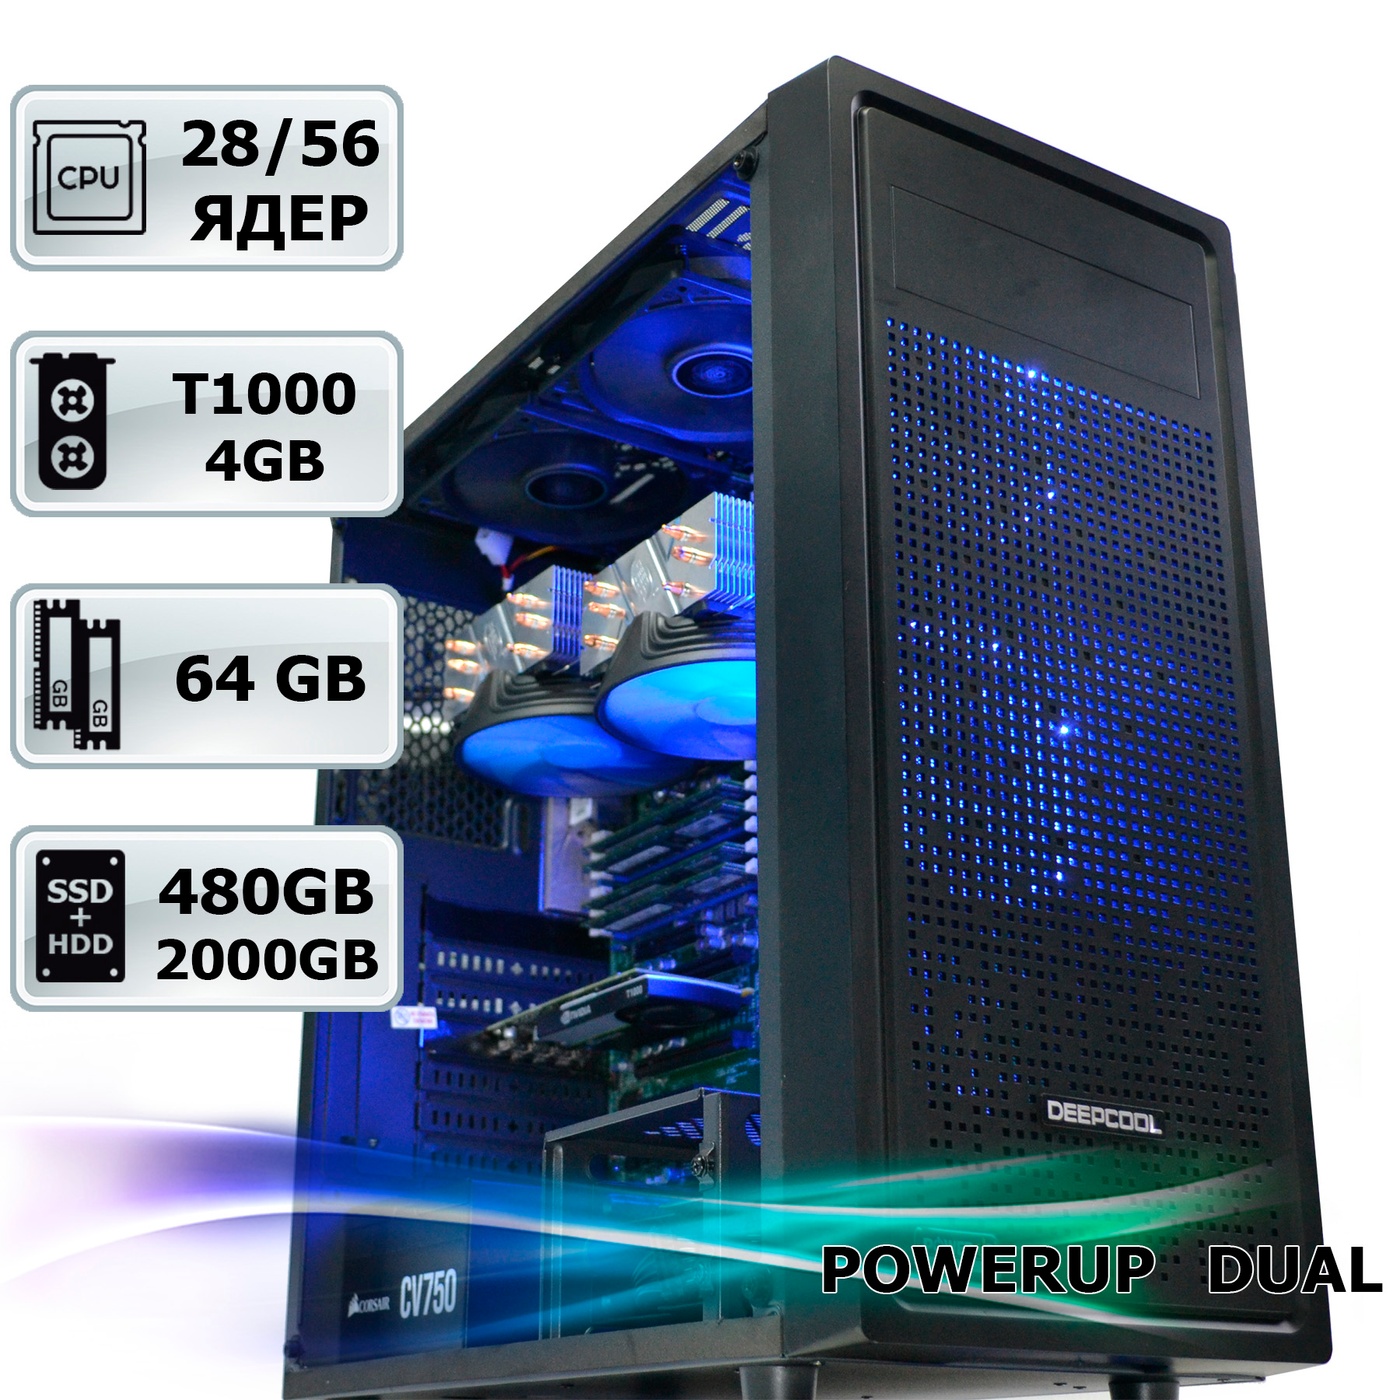 Двухпроцессорная рабочая станция PowerUp #249 Xeon E5 2680 v4 x2/64 GB/HDD 2 TB/SSD 480 GB/NVIDIA Quadro T1000 4GB